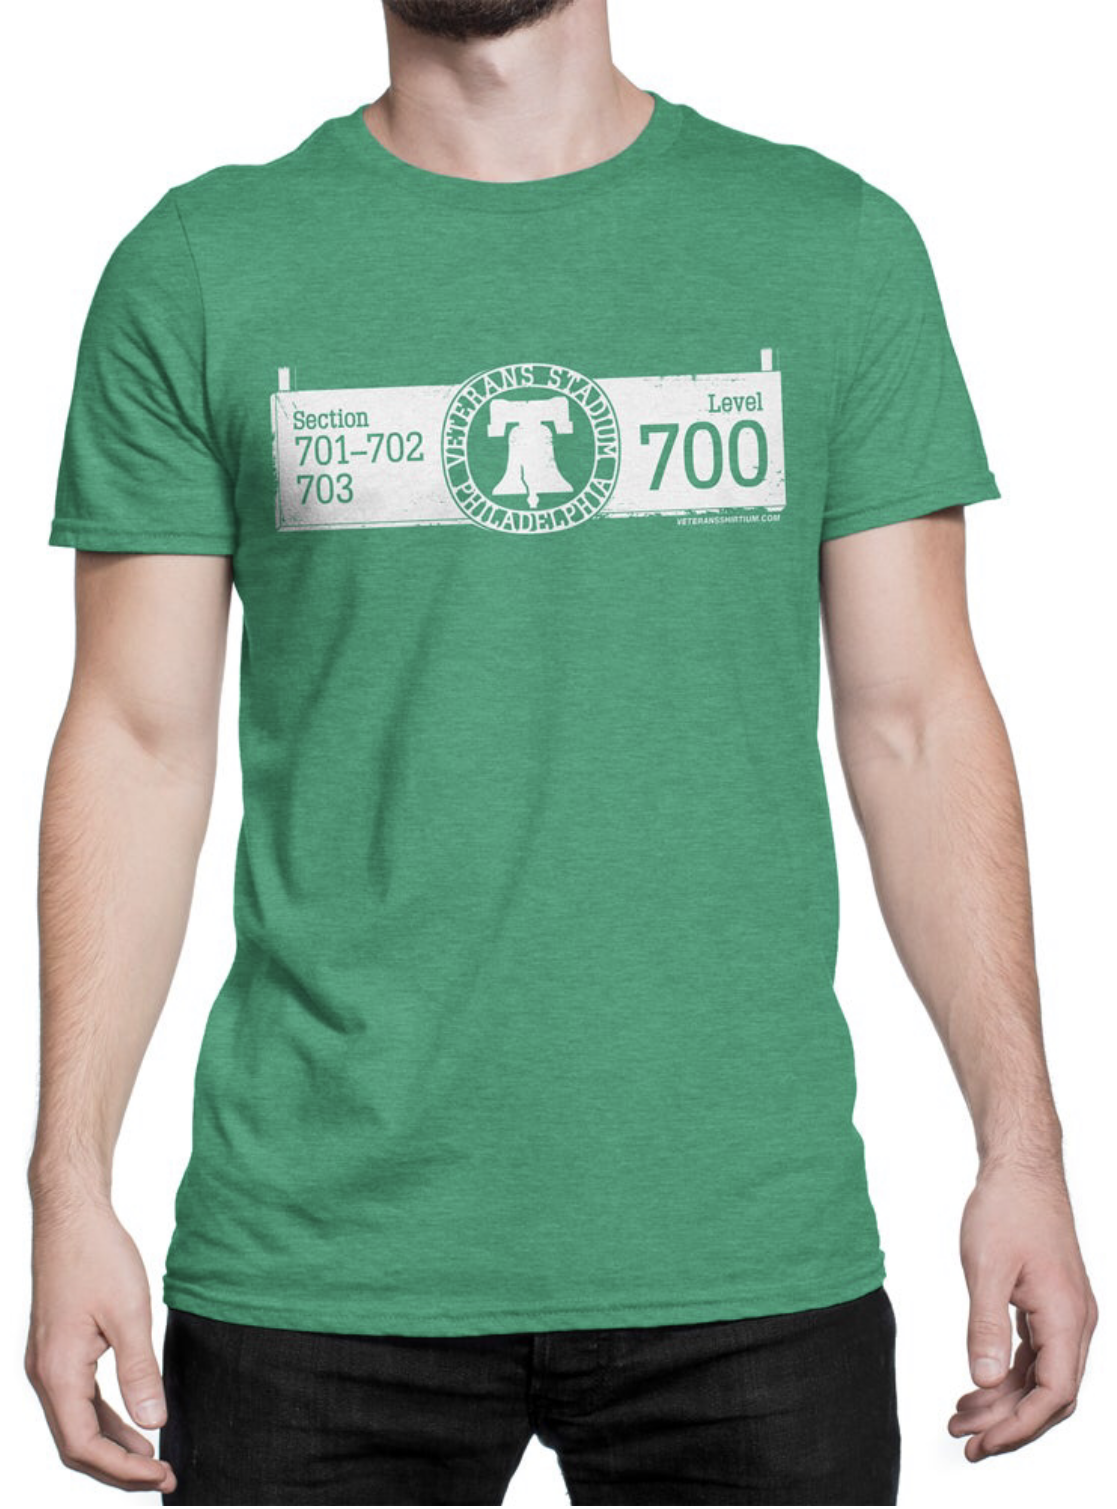 700 Level Veterans Stadium Retro T-Shirt